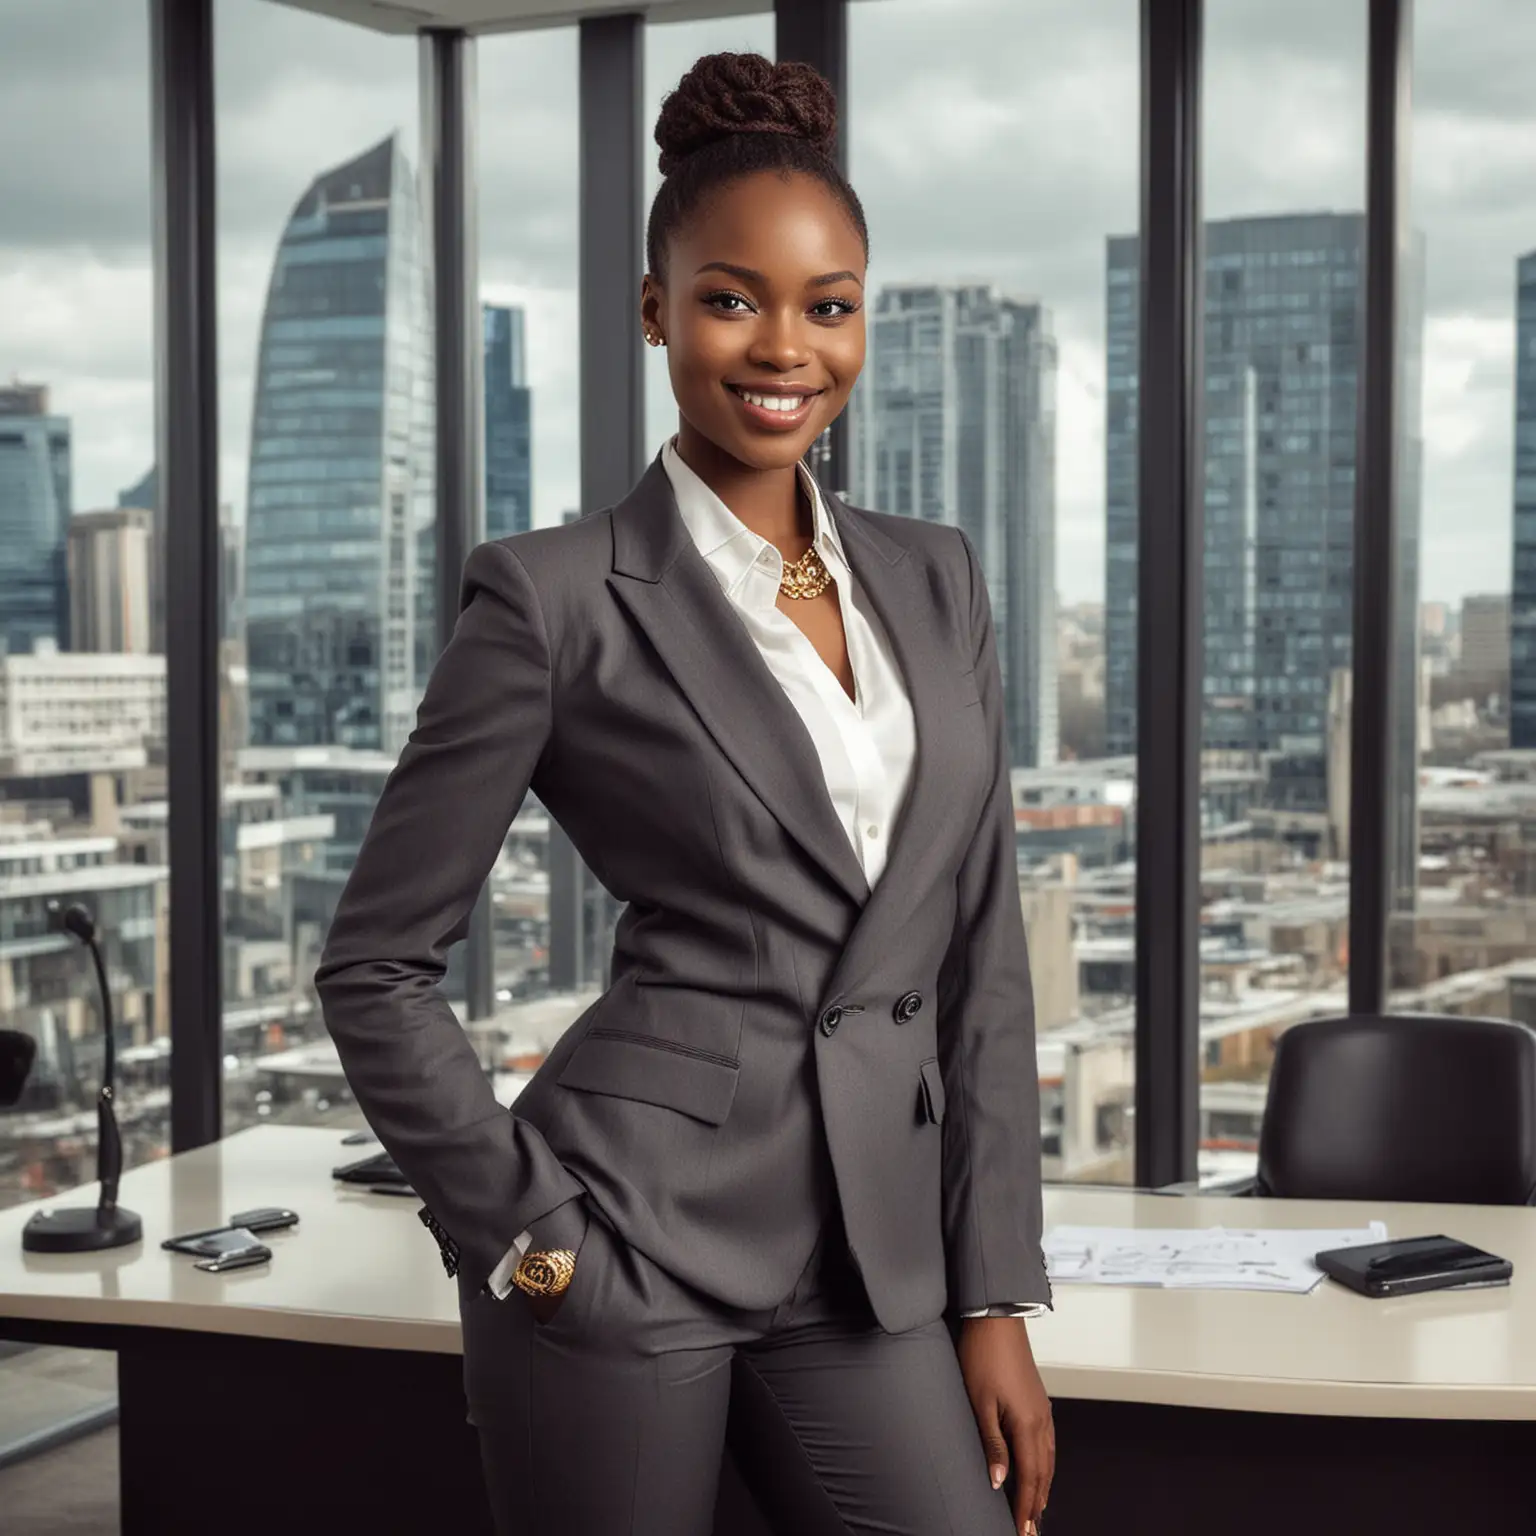 Afrikanisches Top Model, großer Busen, posiert im Anzug im Luxusbüpro, lächelt stolz, hochhausbüro